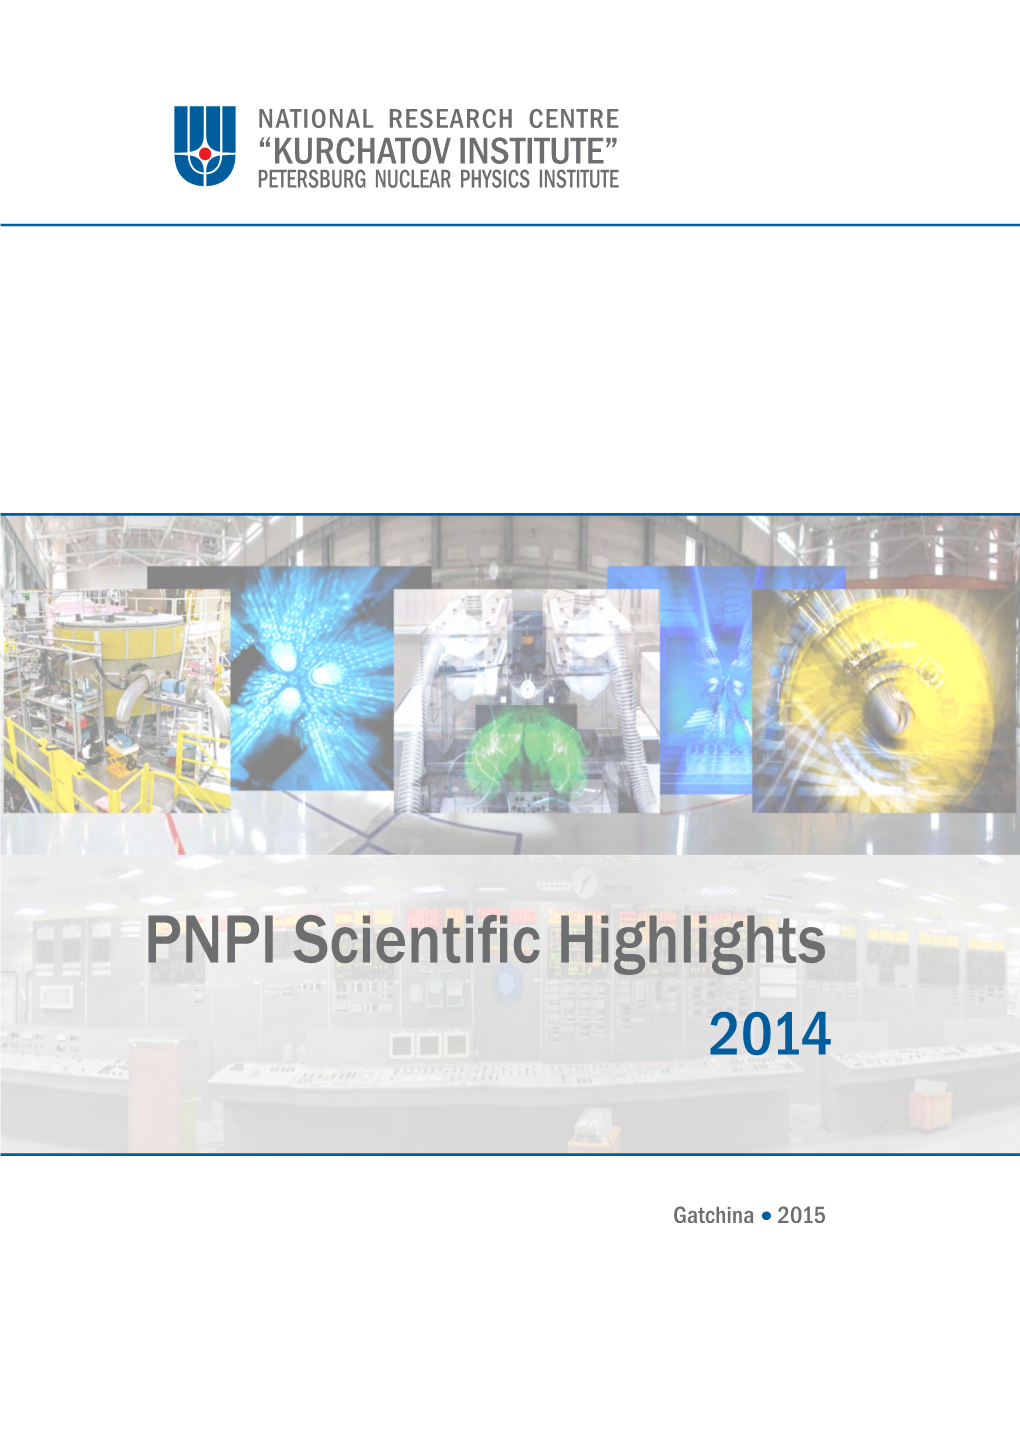 PNPI Scientific Highlights 2014